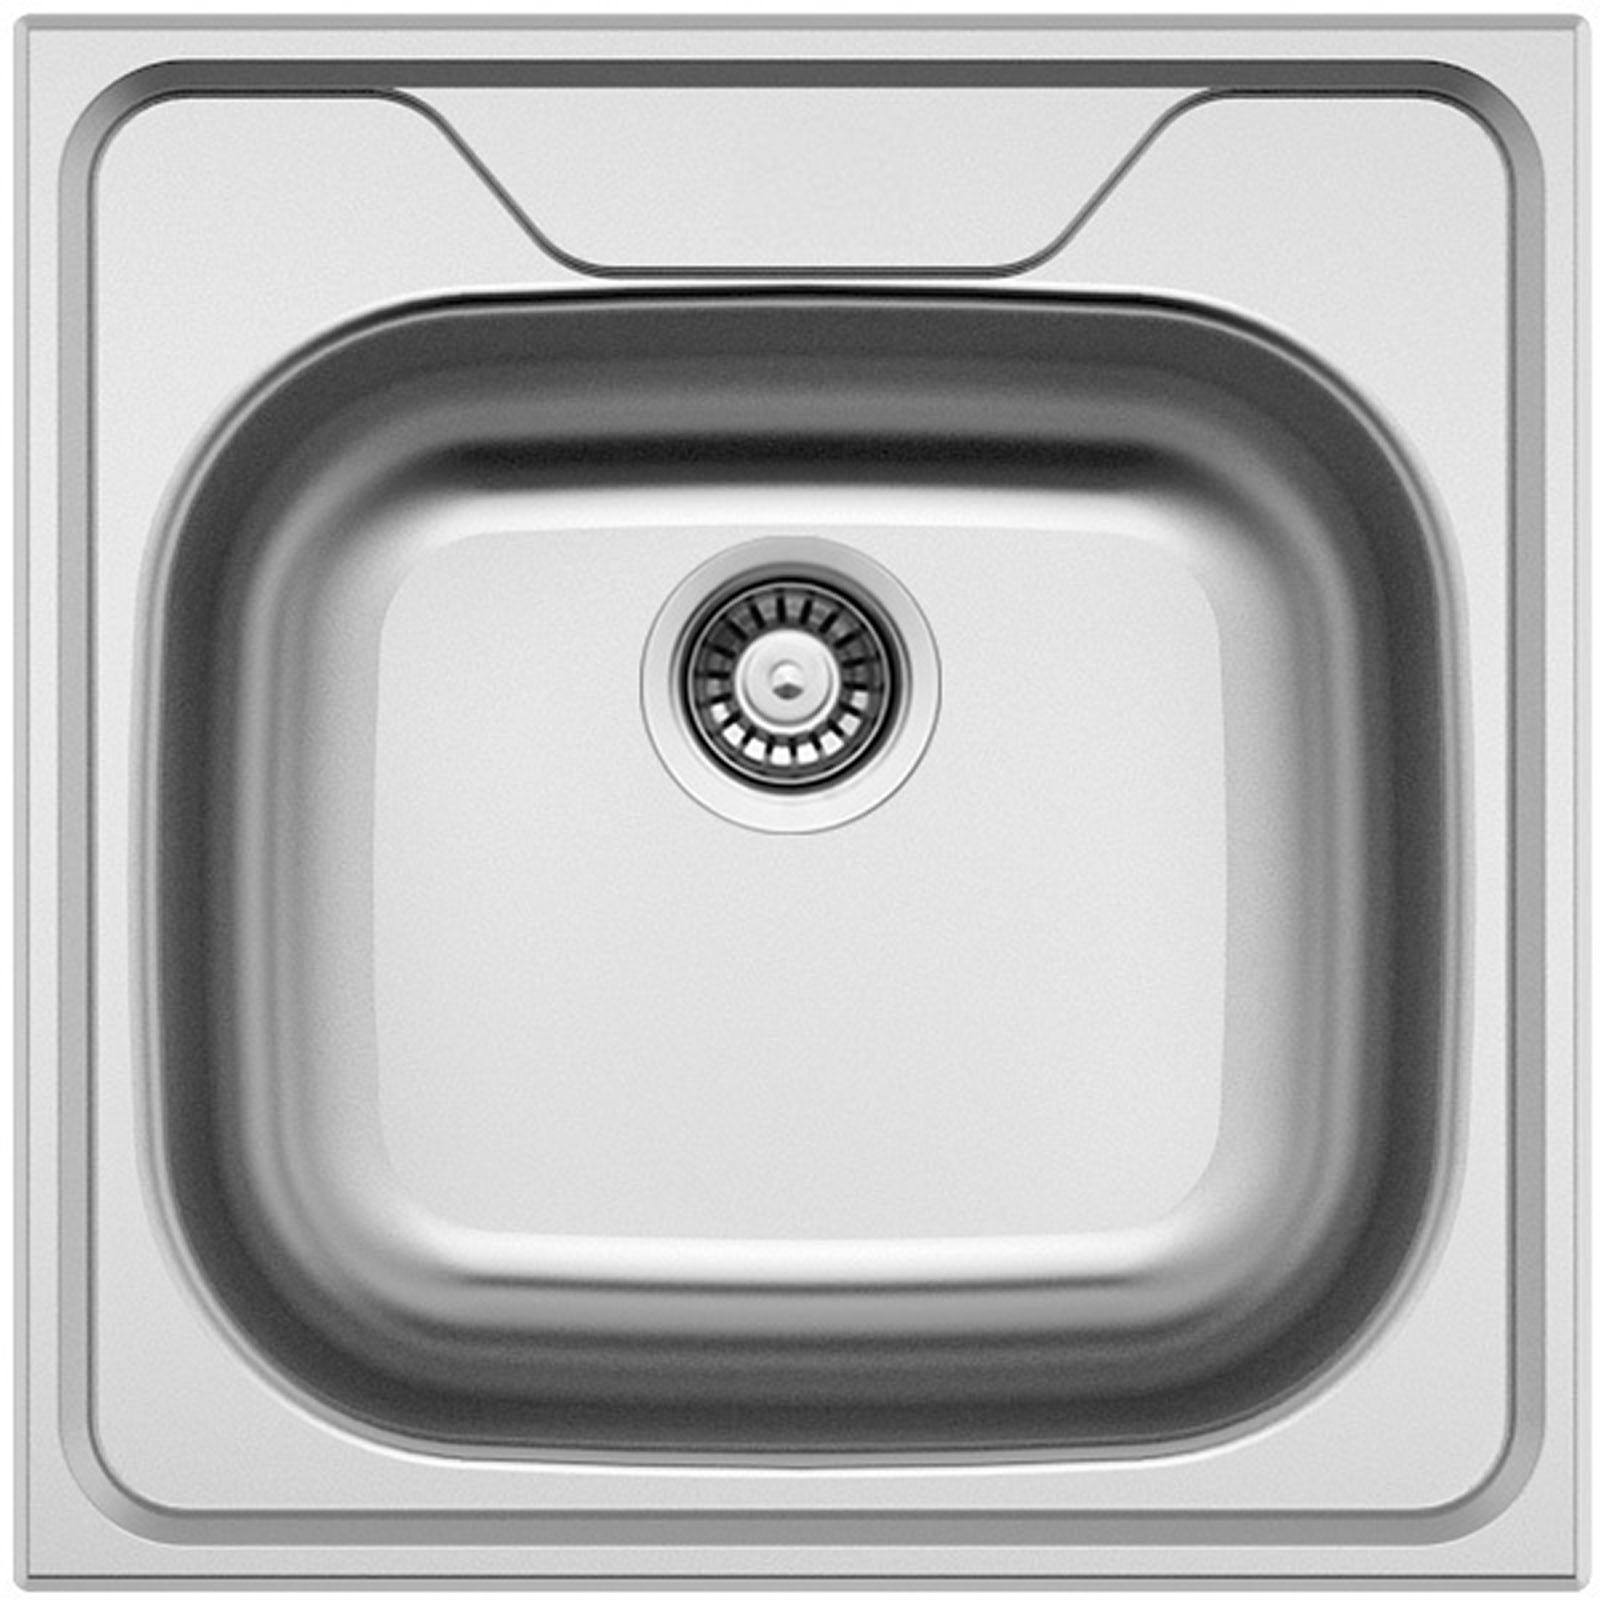 Sinks CLASSIC 480 V 0,8mm leštěný